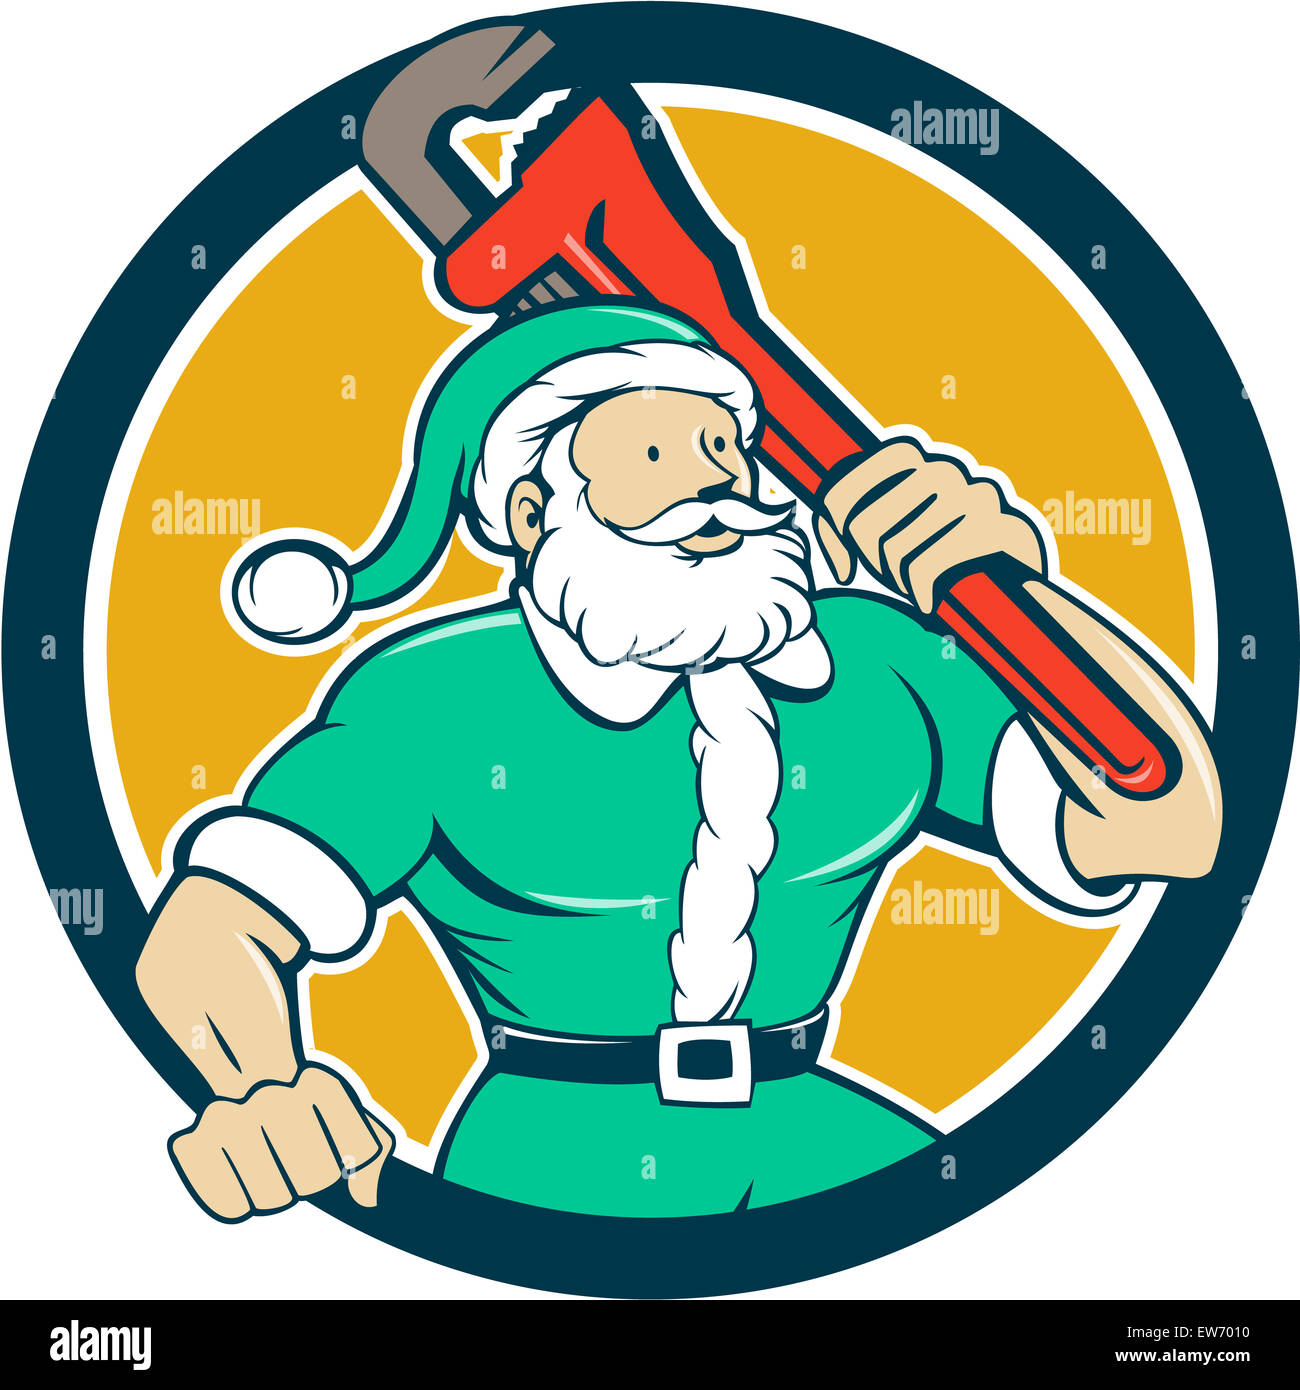 Abbildung von einem muskulösen Santa Claus saint Nicholas Vater Weihnachten Tragetasche Schraubenschlüssel grünen Anzug Set im inneren Kreis auf isolierte Hintergrund getan im Cartoon-Stil trägt. Stockfoto